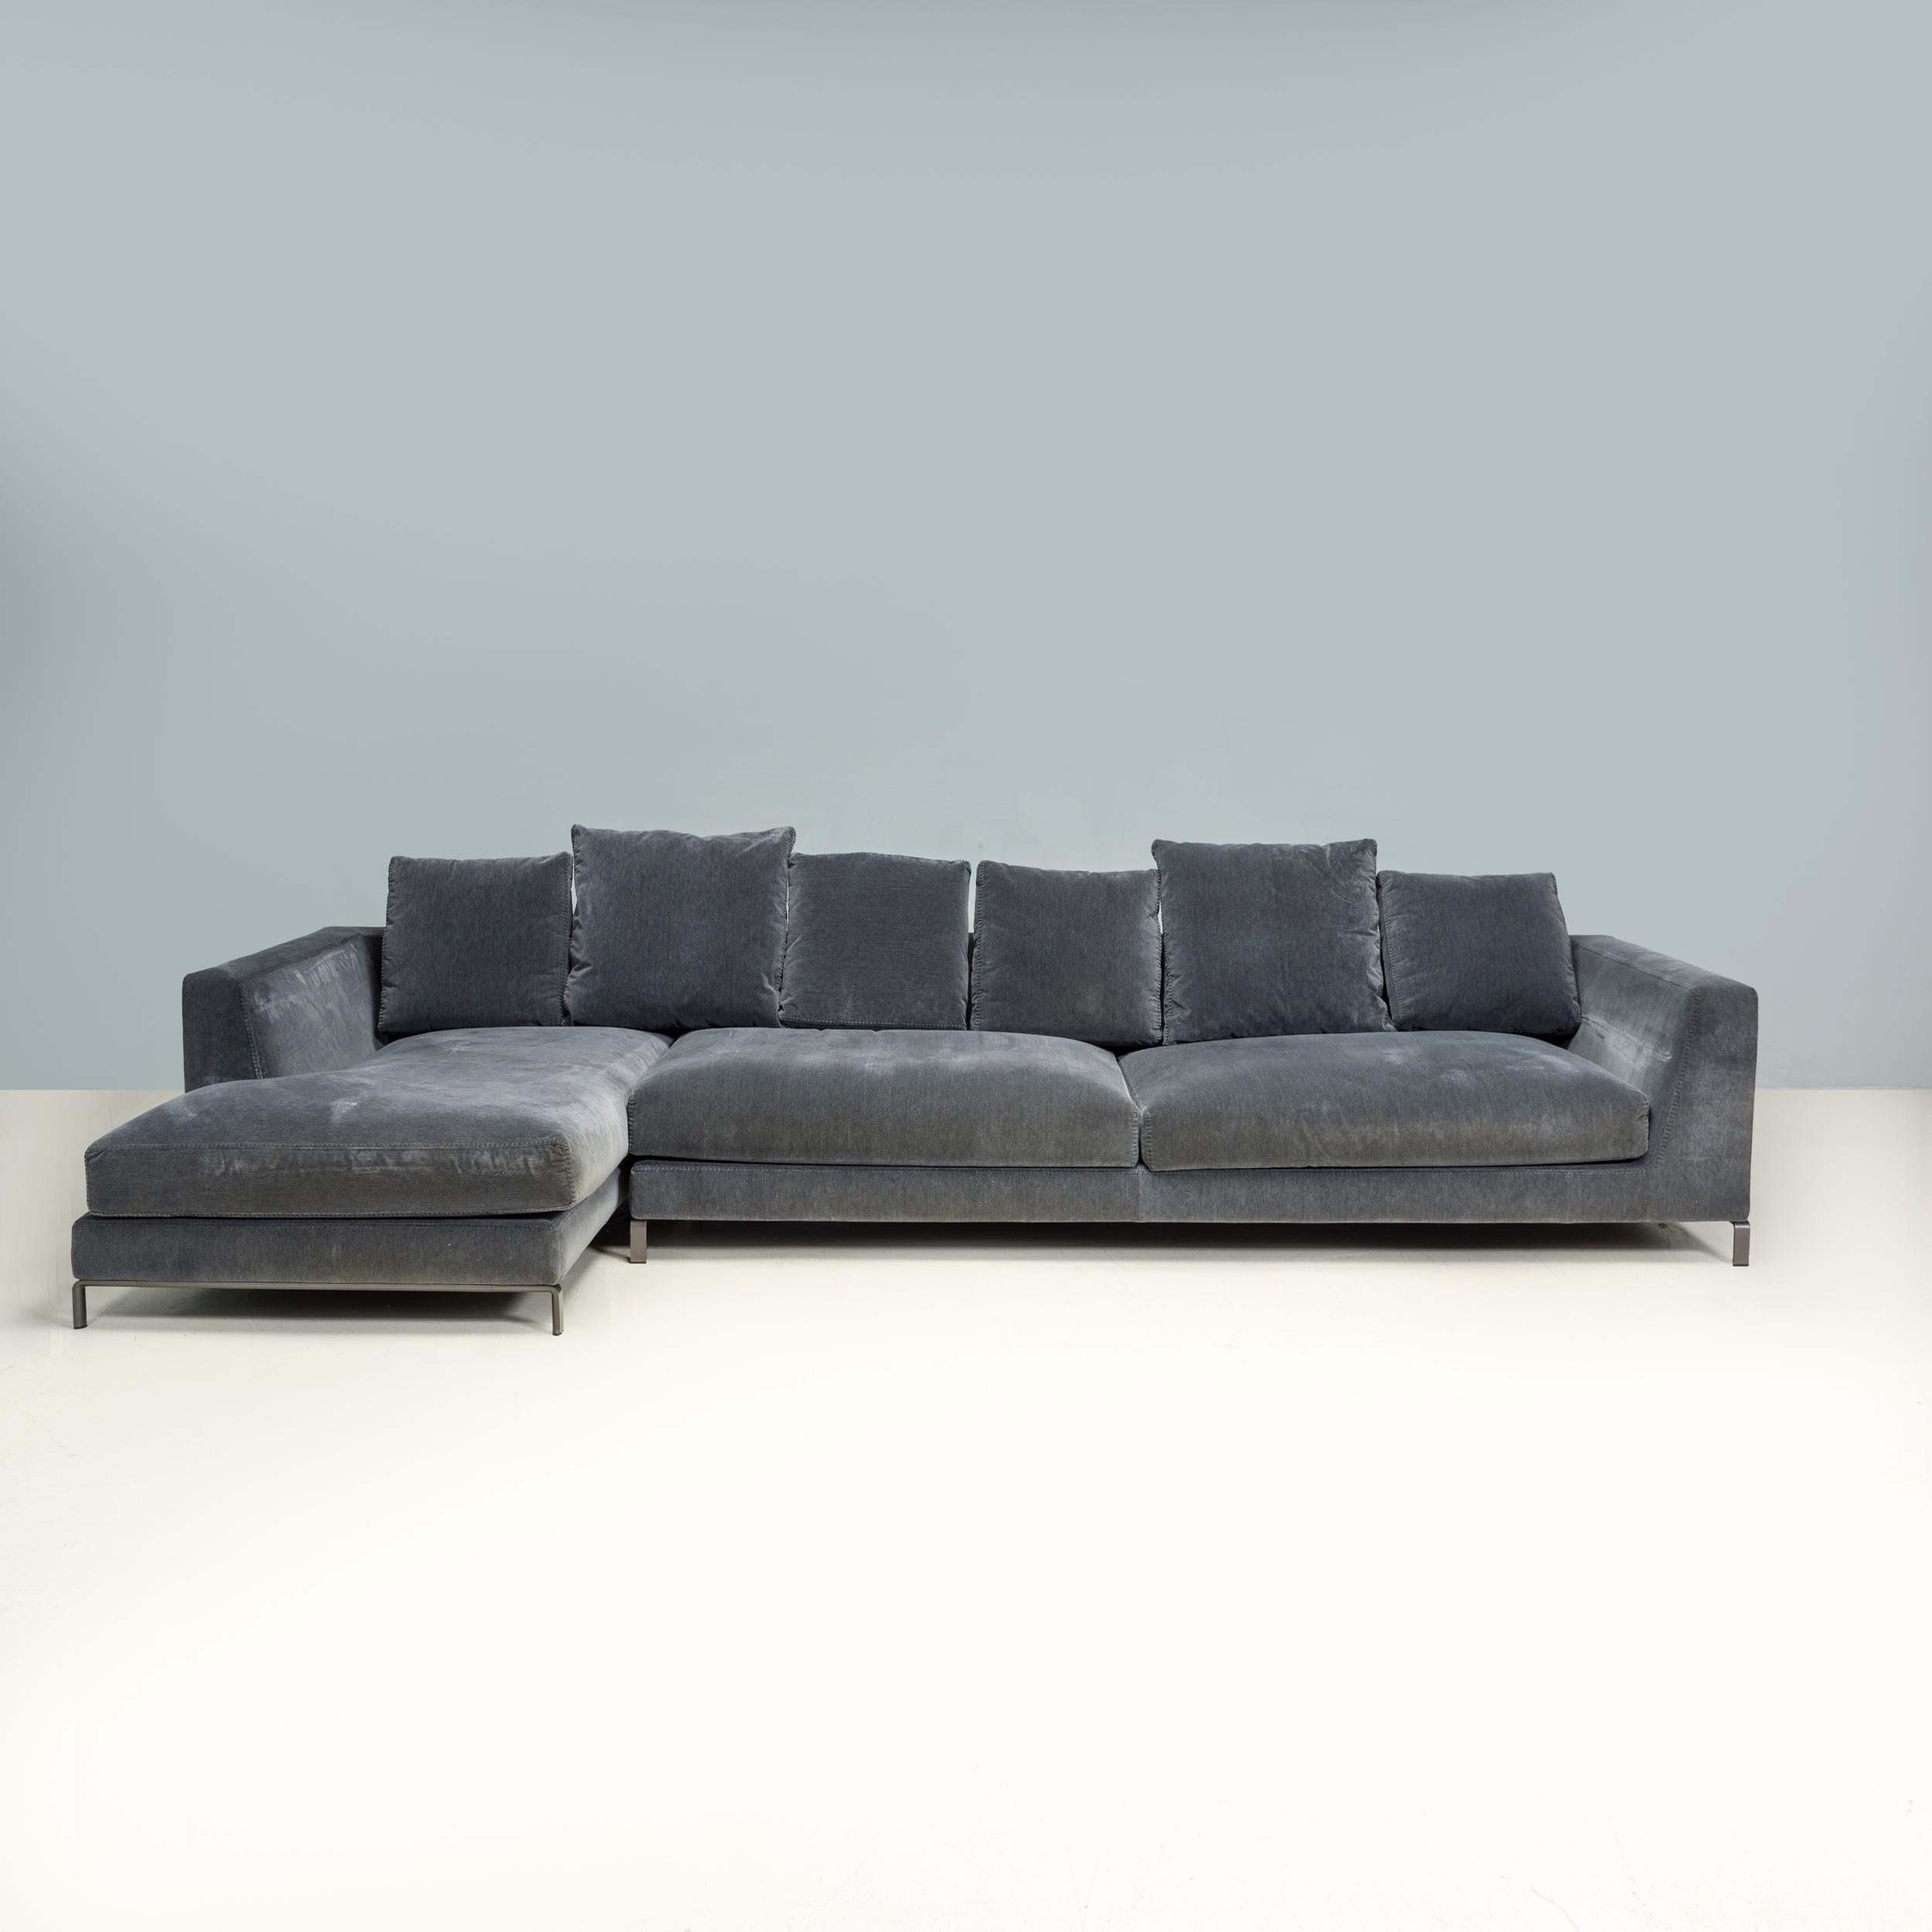 Das Sofa Ray wurde ursprünglich von Antonio Citterio für B&B Italia im Jahr 2012 entworfen und ist ein fantastisches Beispiel für zeitgenössisches italienisches Design.

Das aus Stahlrohr gefertigte modulare Sofa besteht aus zwei Komponenten, die